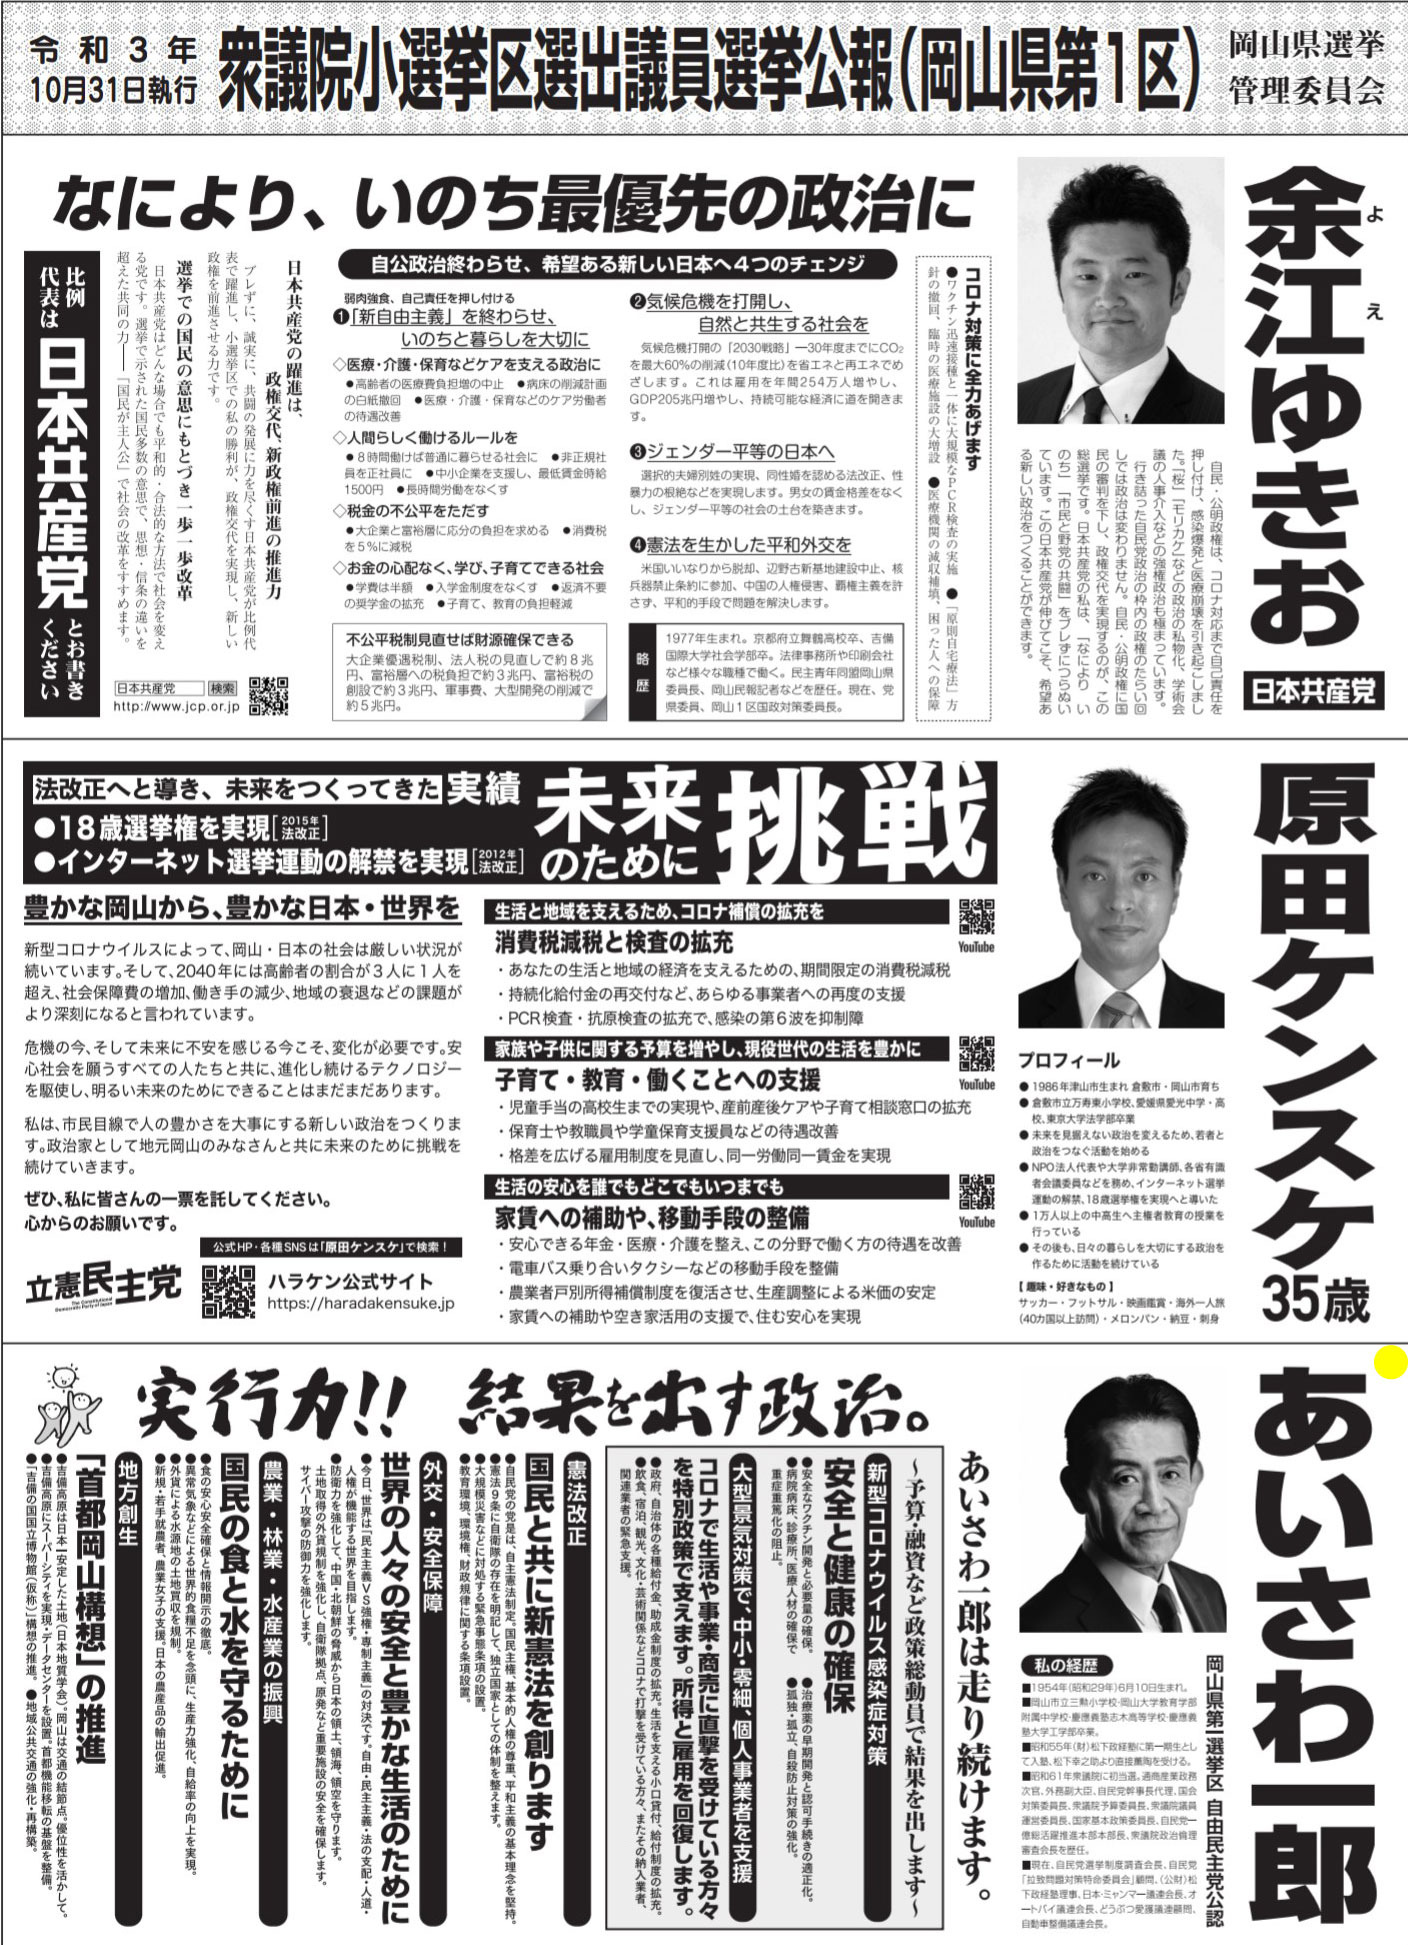 ☆第49回 衆議院議員総選挙の選挙公報未配布について: 日本会議岡山 